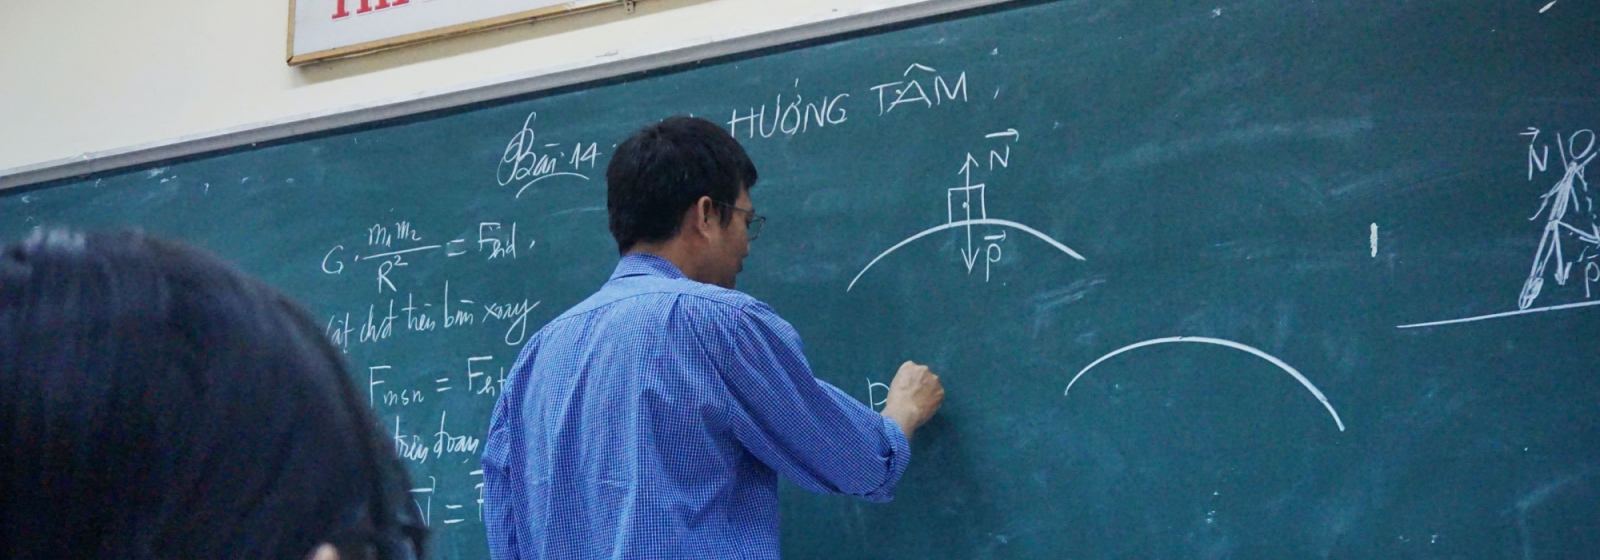 professor writing on chalkboard